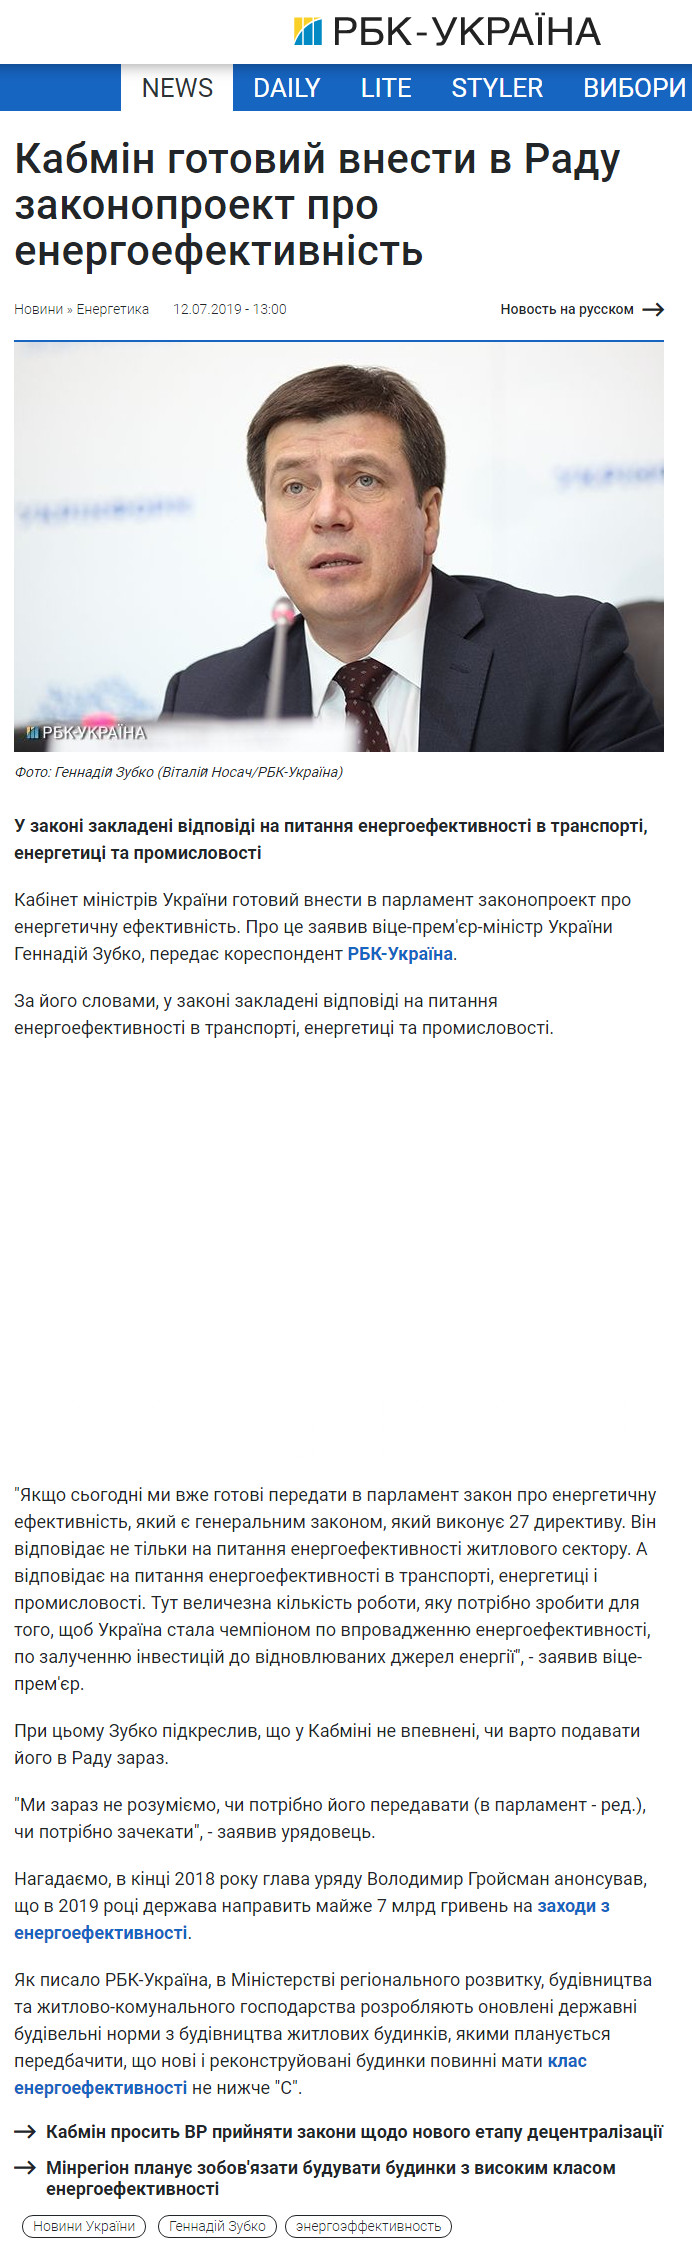 https://www.rbc.ua/ukr/news/kabmin-gotov-vnesti-radu-zakonoproekt-energoeffektivnosti-1562925558.html